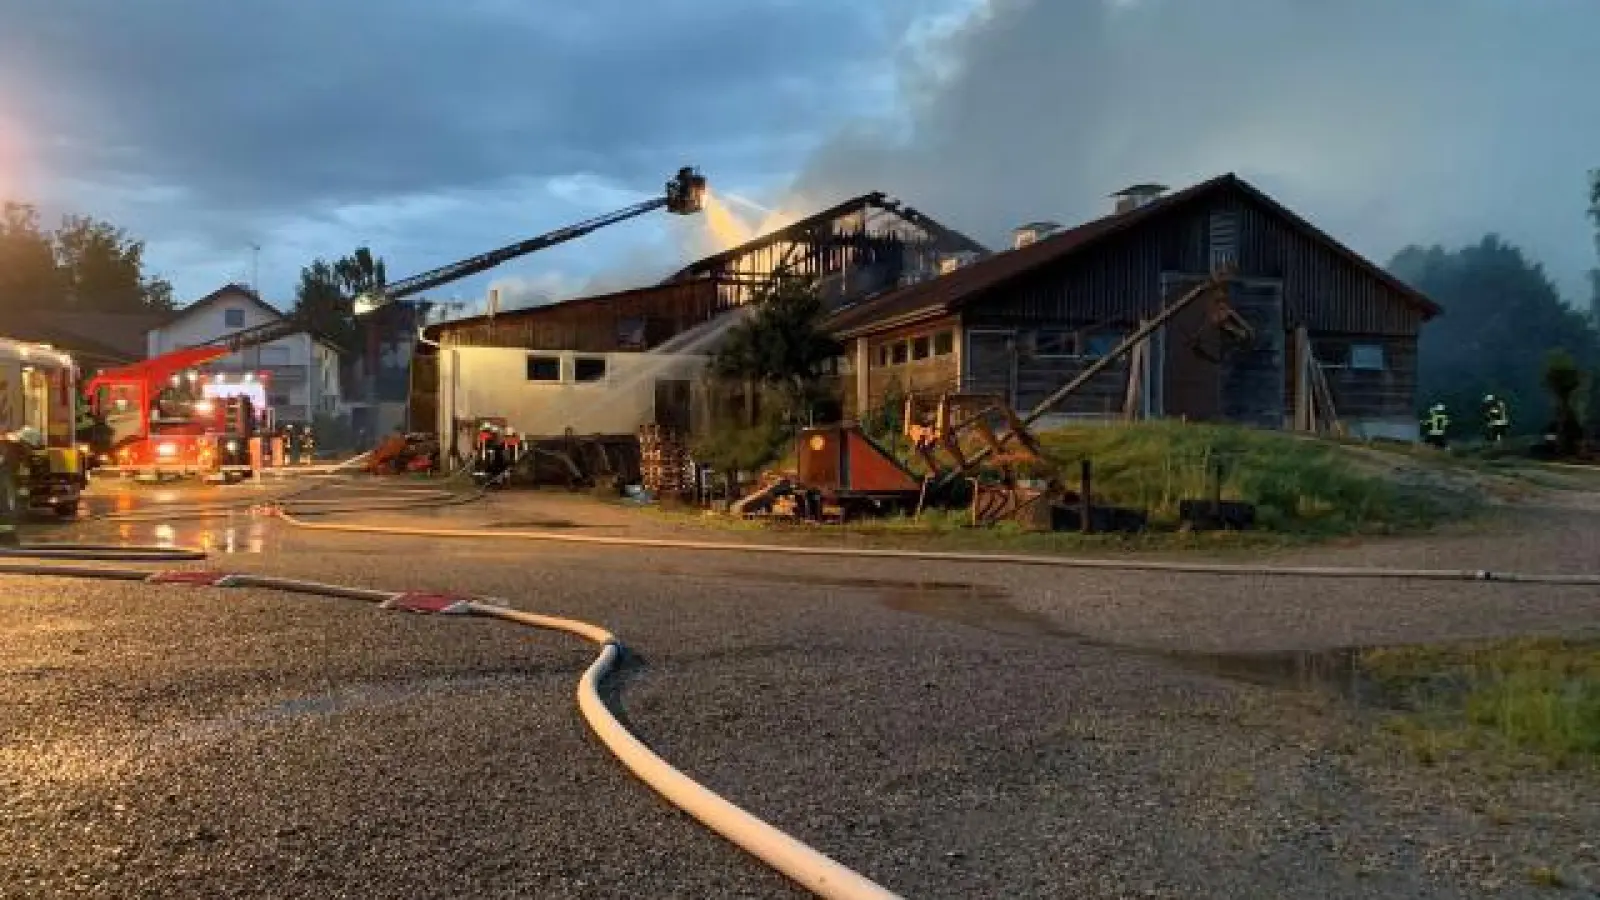 Zwei Stallgebäude brannten gestern Abend in Hollenbach nach einem Blitzschlag aus. Menschen oder Tiere wurden nicht verletzt. Der Schaden beläuft sich nach ersten Schätzungen der Polizei Aichach auf etwa 500 000 Euro.